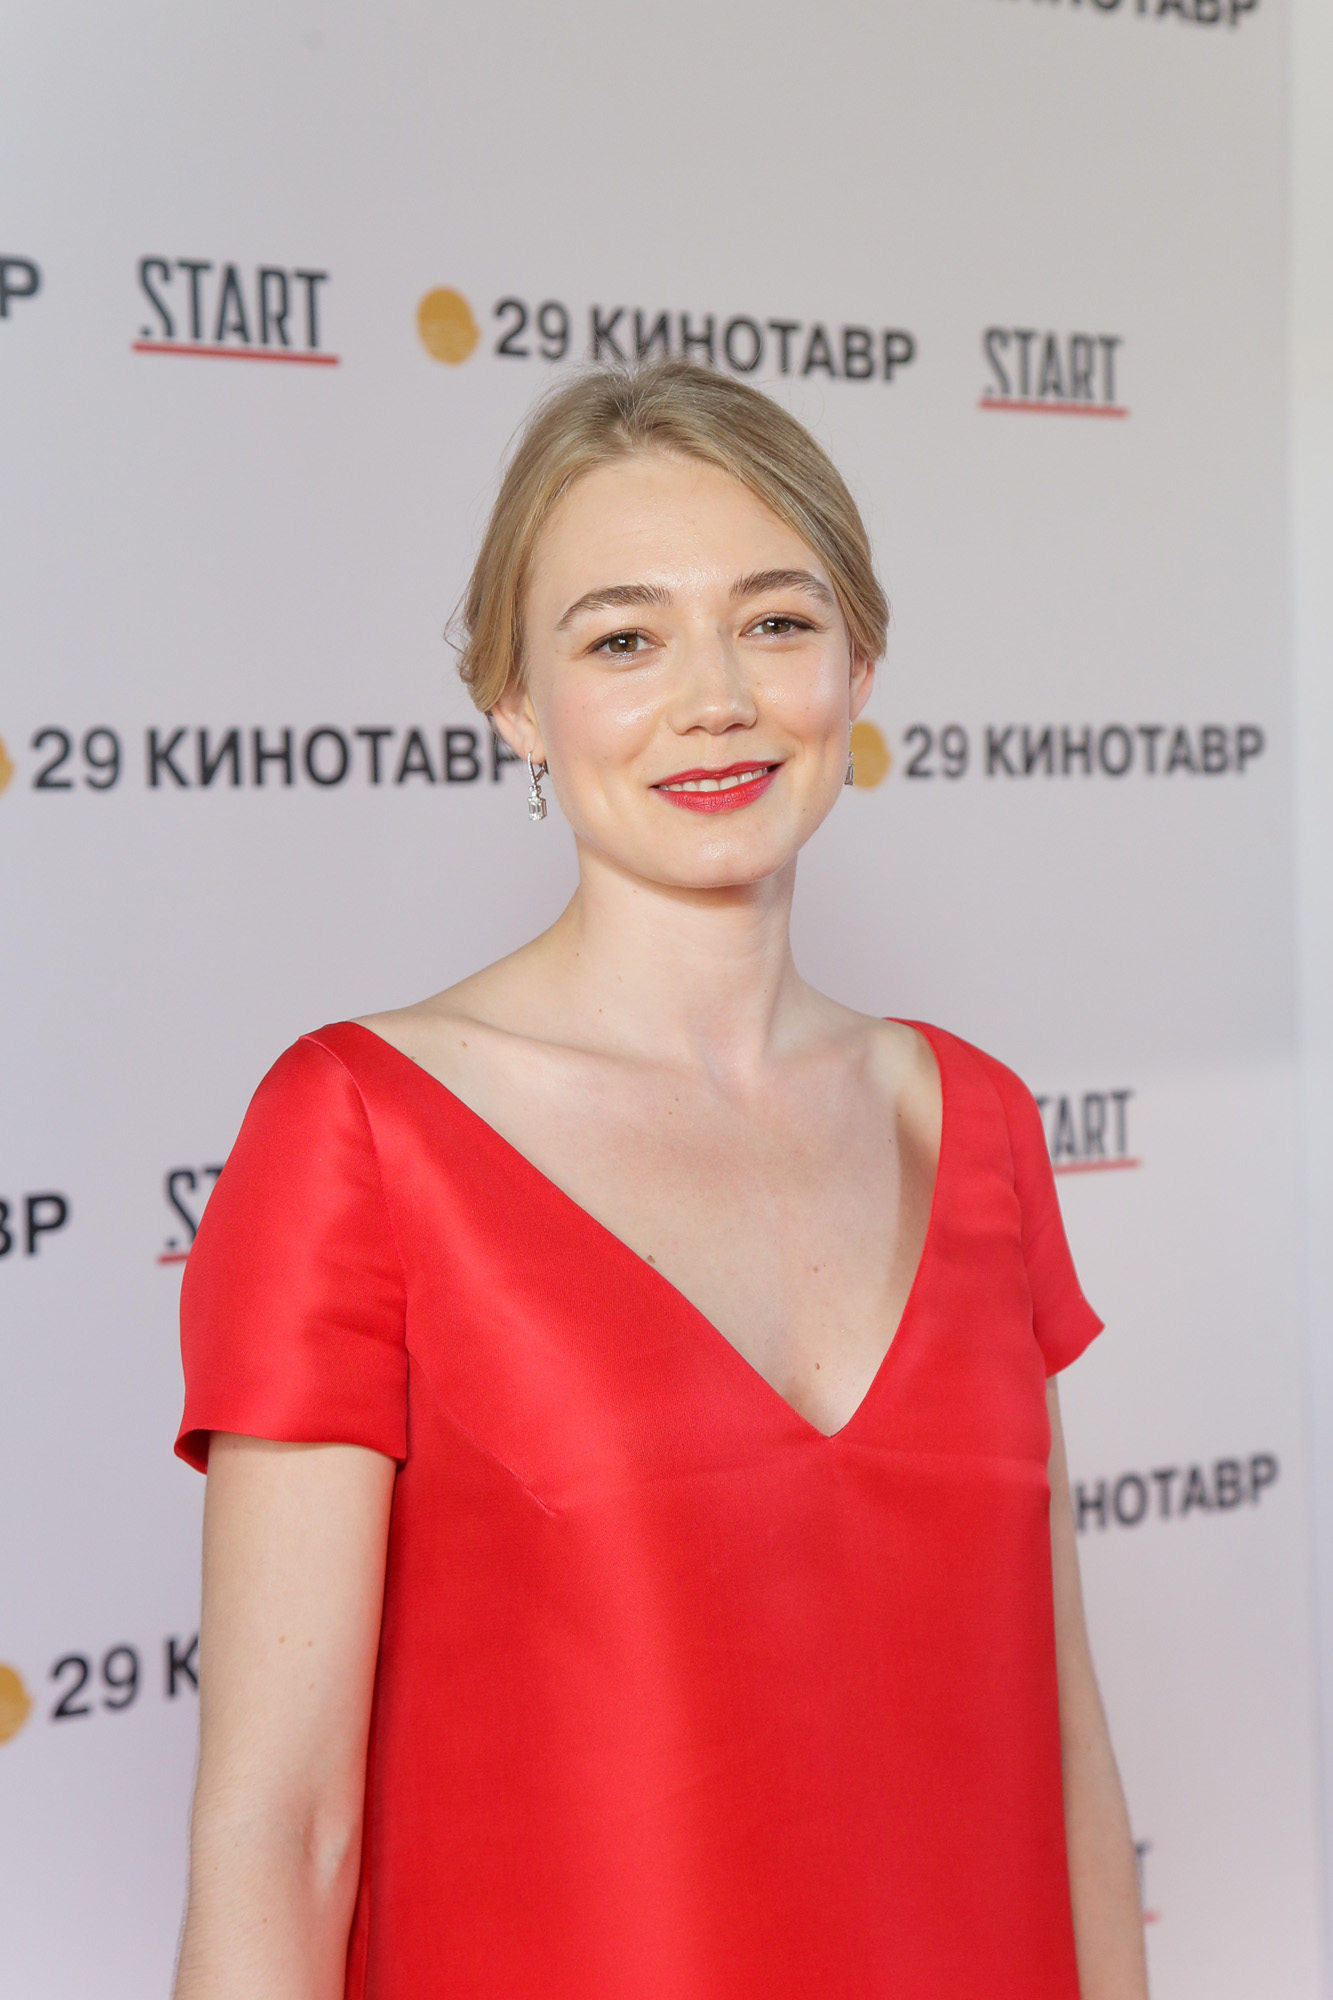 Оксана Акиньшина фото 2020